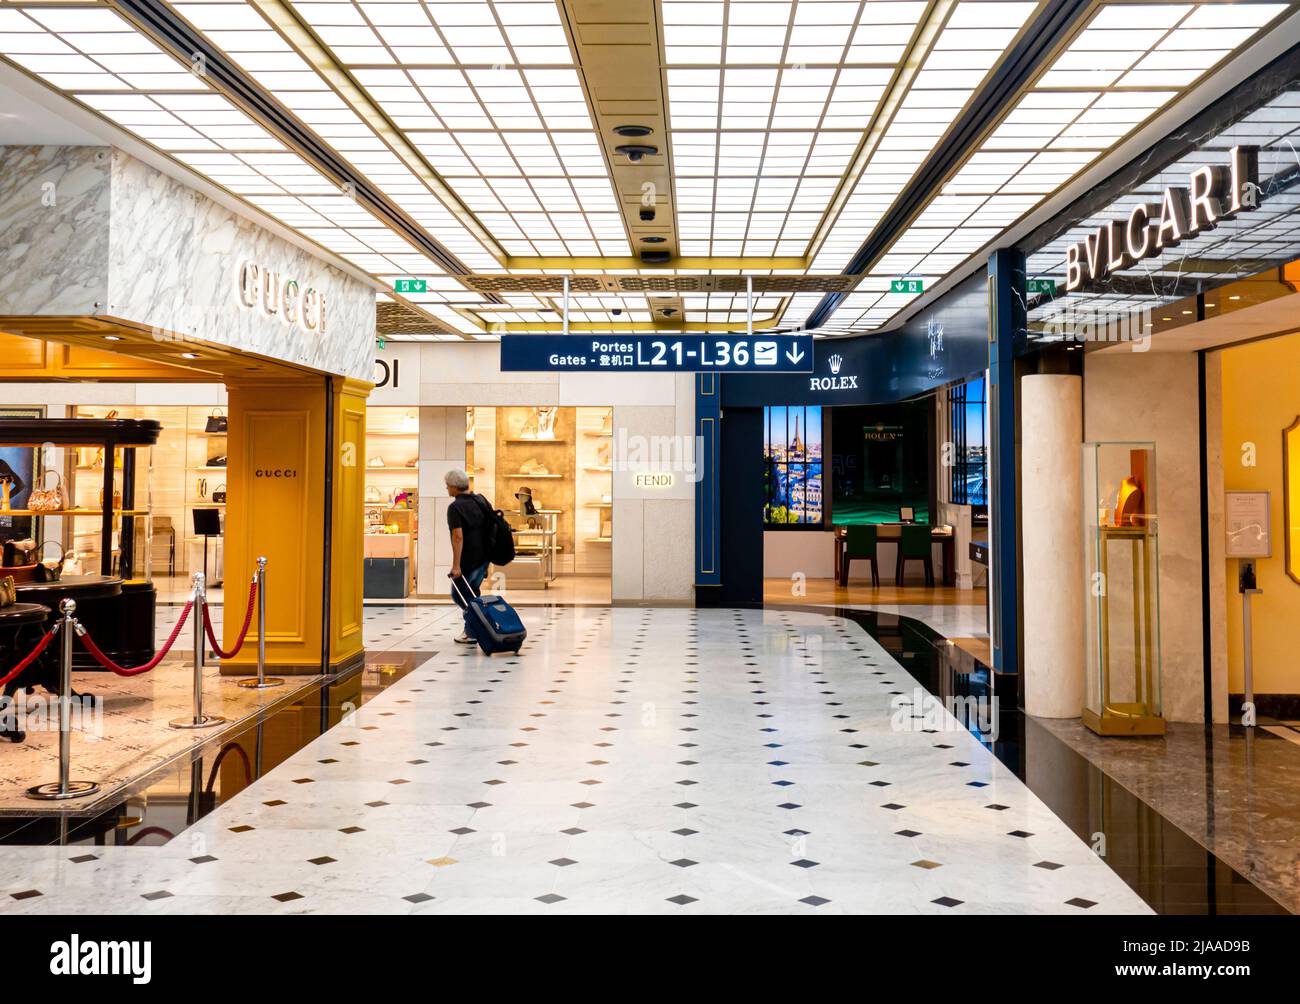 Boutiques Bvlgari et Gucci dans les départements de luxe avec des marques de mode dans le terminal 2E, aéroport de Paris, CDG, France Banque D'Images